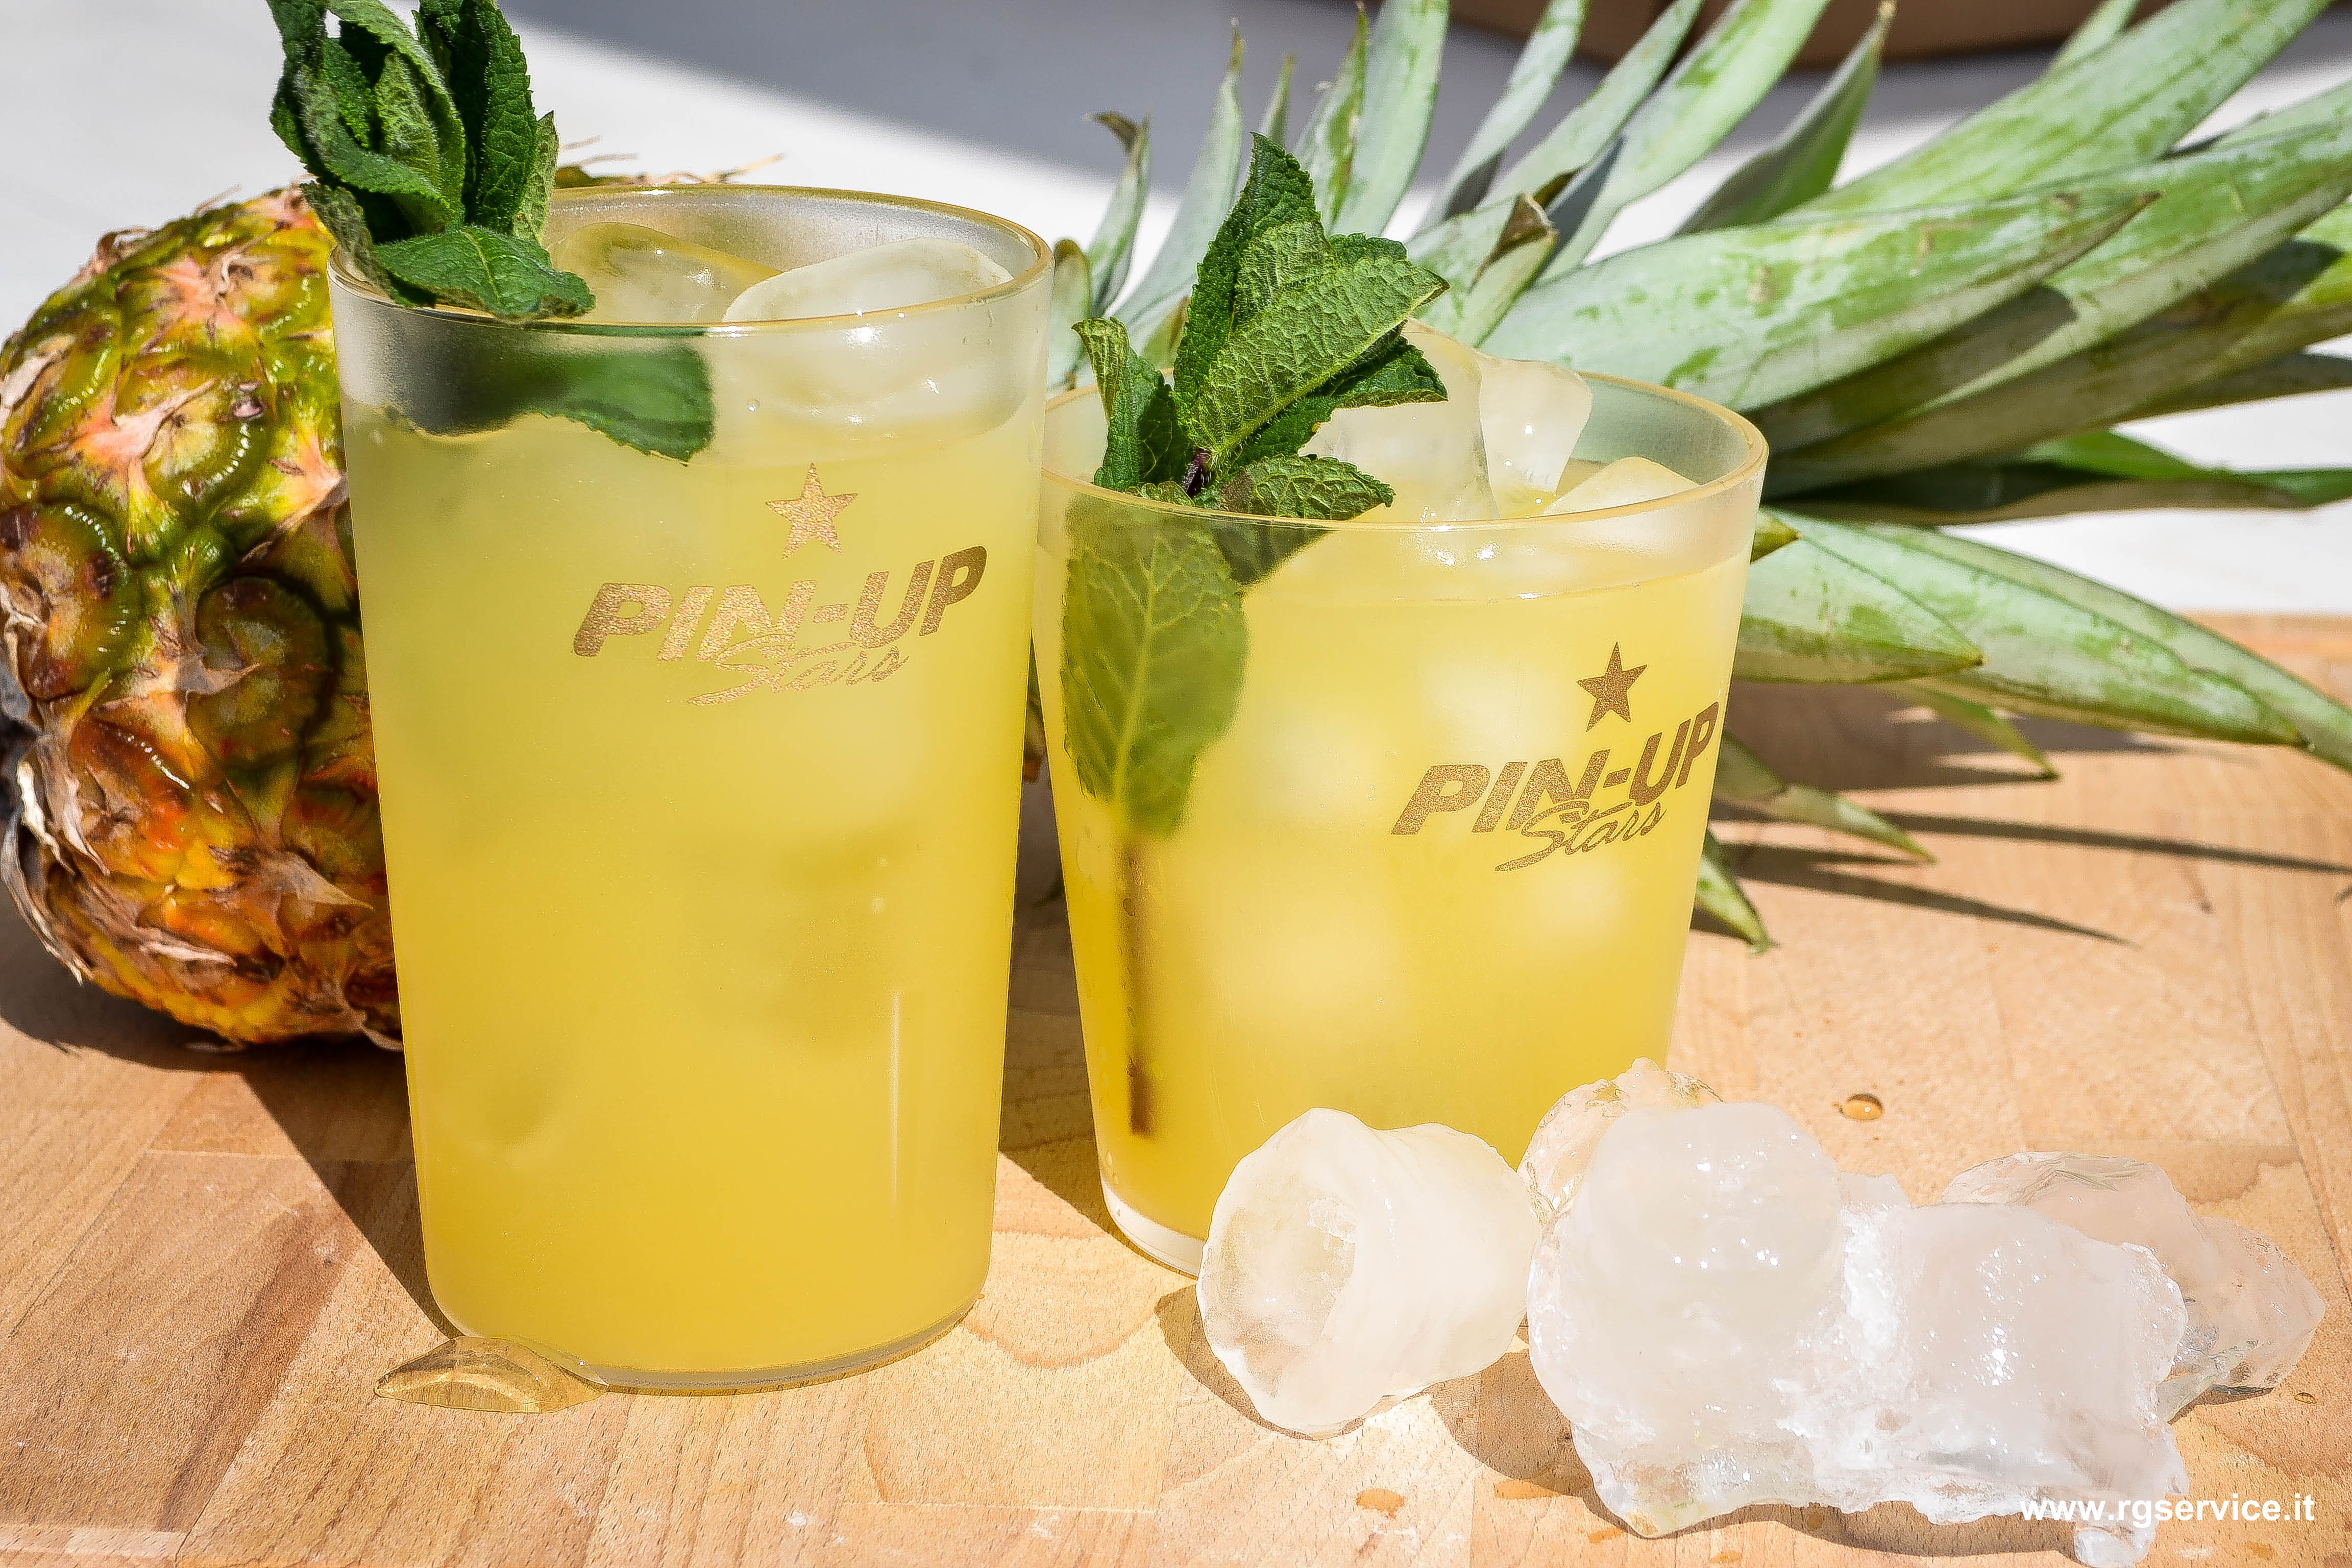 Bicchieri in san per cocktail personalizzati con loghi.